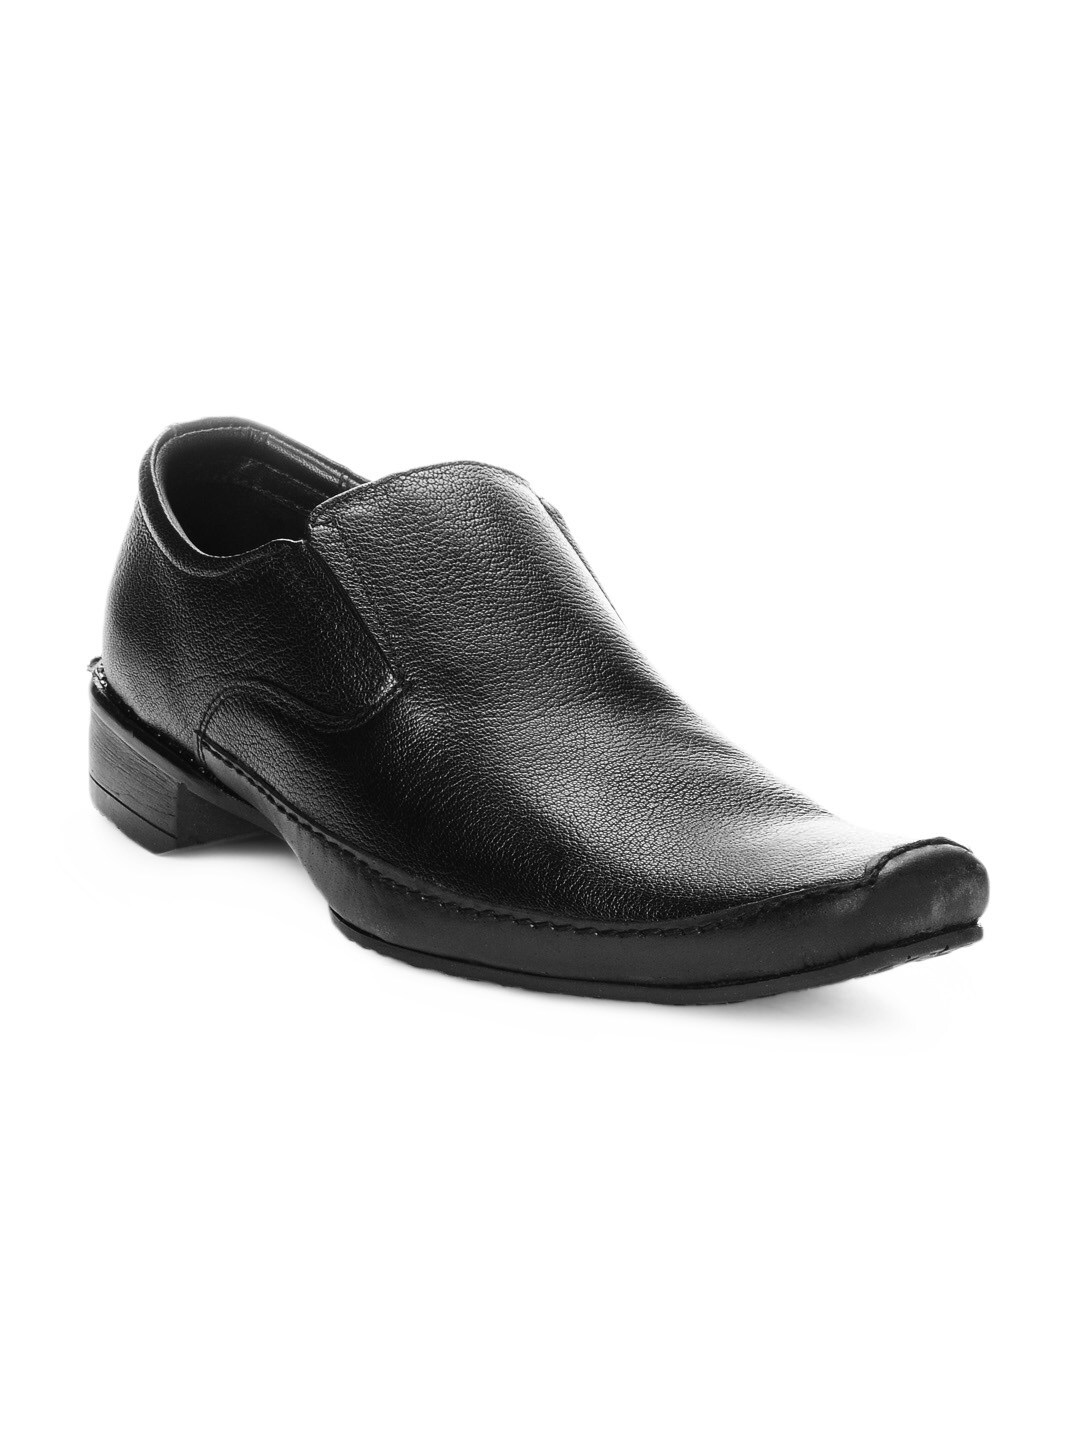 Franco Leone Men Black Formal Shoes